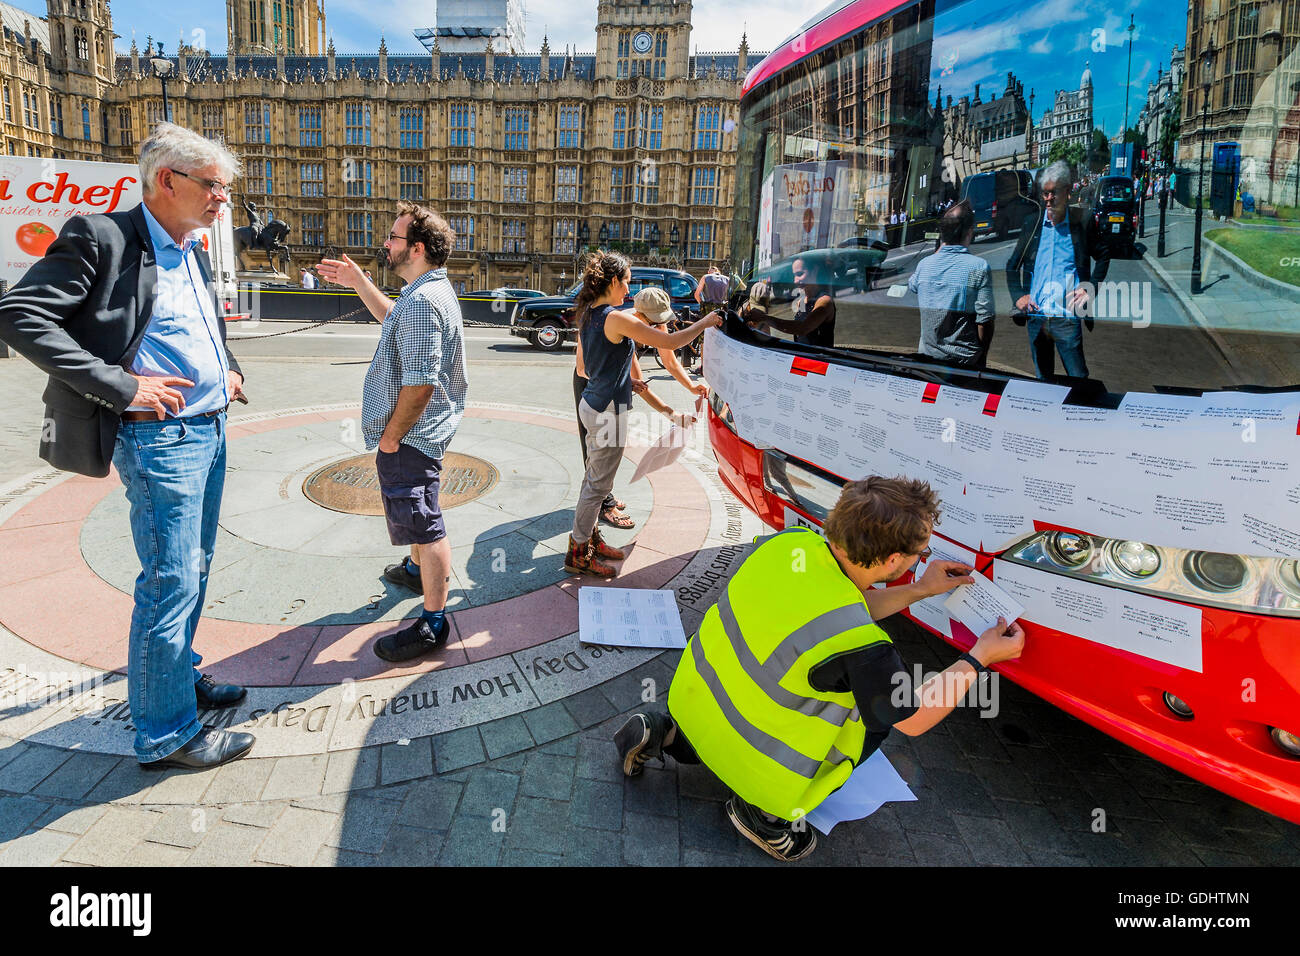 Londra, Regno Unito. 18 Luglio, 2016. John Sauven, direttore esecutivo di Greenpeace UK, orologi come la parte anteriore del bus è coperto in messaggi - La Brexit 'voto lasciare' battaglia bus (utilizzato da Boris Johnson) è stata acquisita da Greenpeace è stato ri-branded al di fuori del Parlamento. Il £350m NHS rivendicazione è stata coperta con migliaia di domande per il nuovo governo da lasciare e rimanere elettori - molti di loro cosa Brexit mezzi per l'ambiente. Le domande scritte su adesivi, stanno formando un montaggio che illustrerà le parole 'tempo di verità" in grandi lettere bianche sul lato del bus. Il bus è stato pa Foto Stock